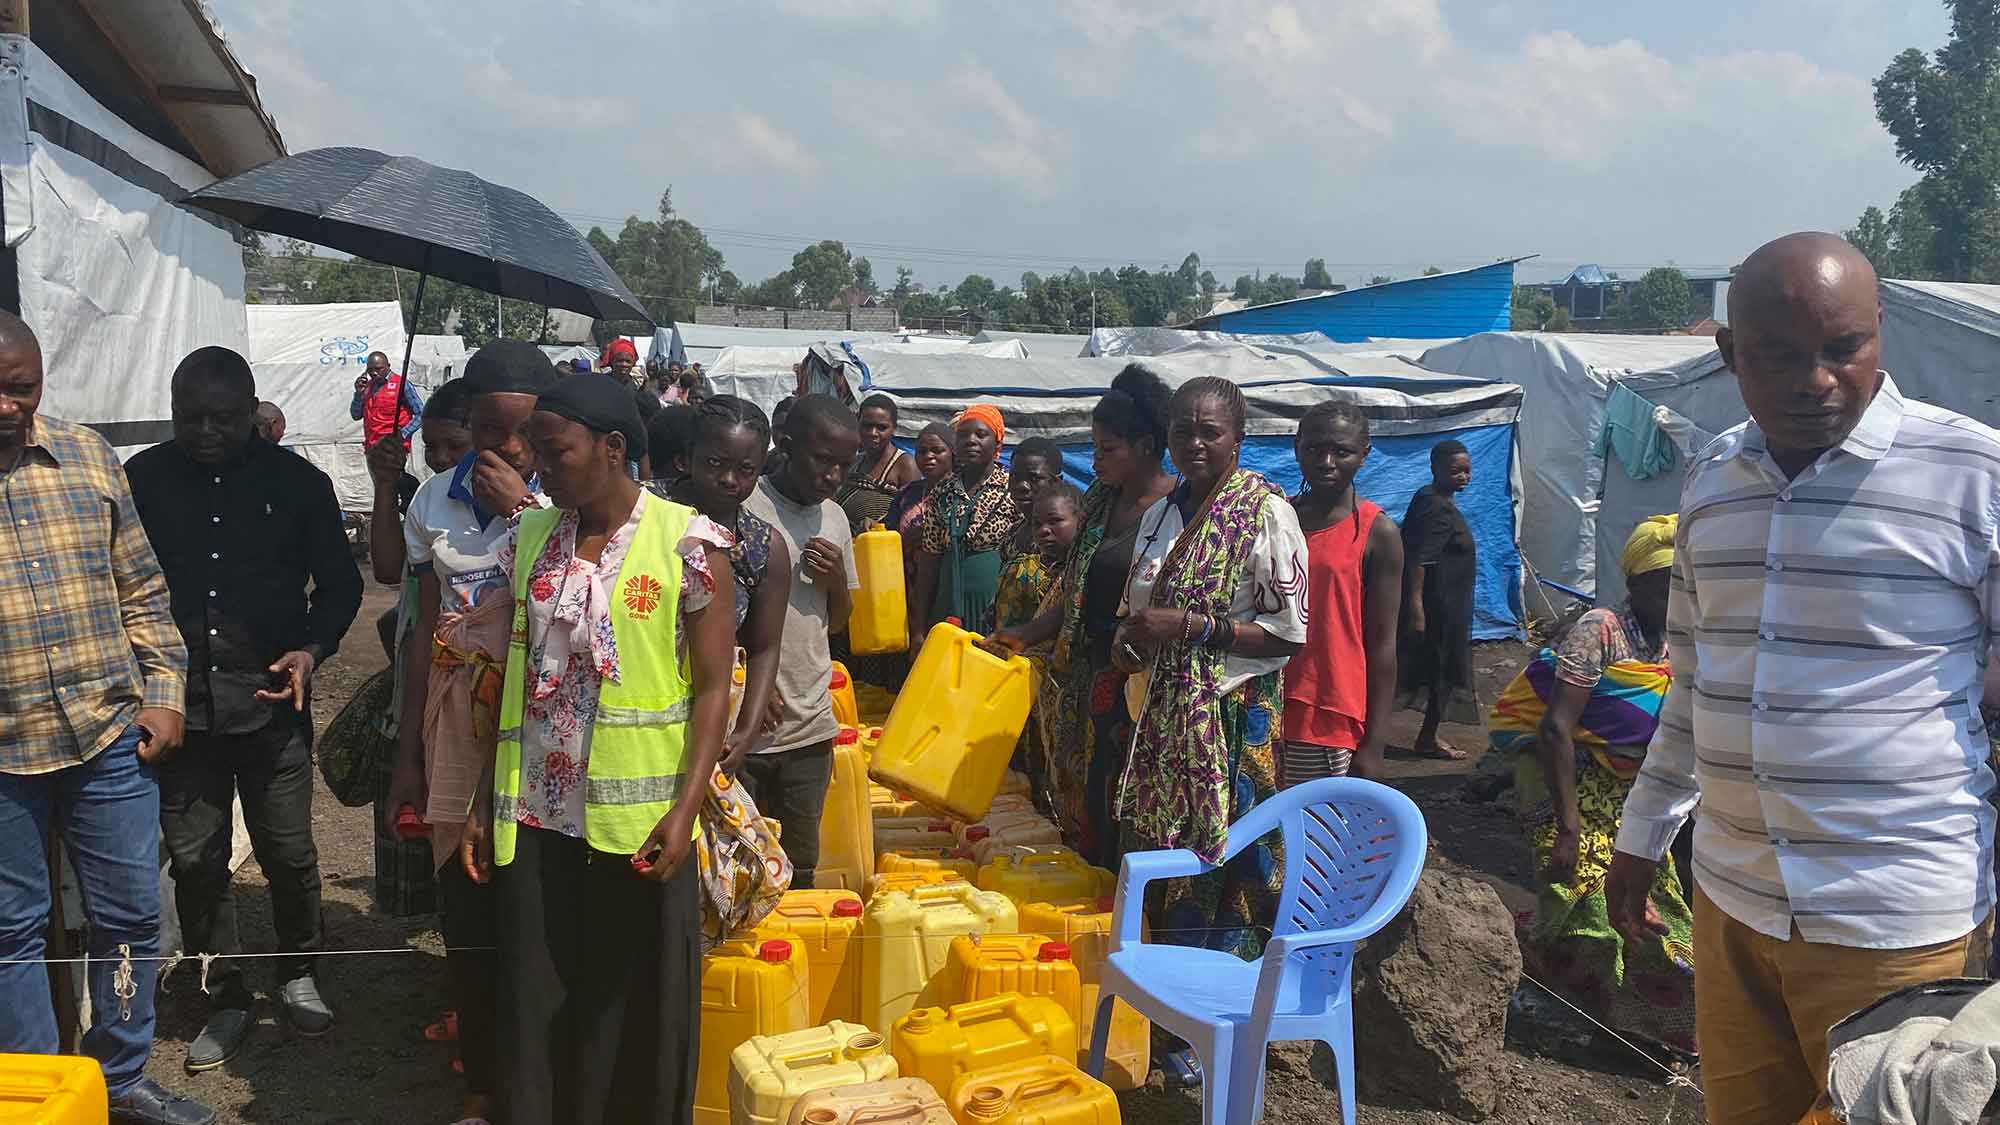 Caritas international: Humanitäre Situation im Osten des Kongos verschärft sich – weitere Nothilfe unabdingbar